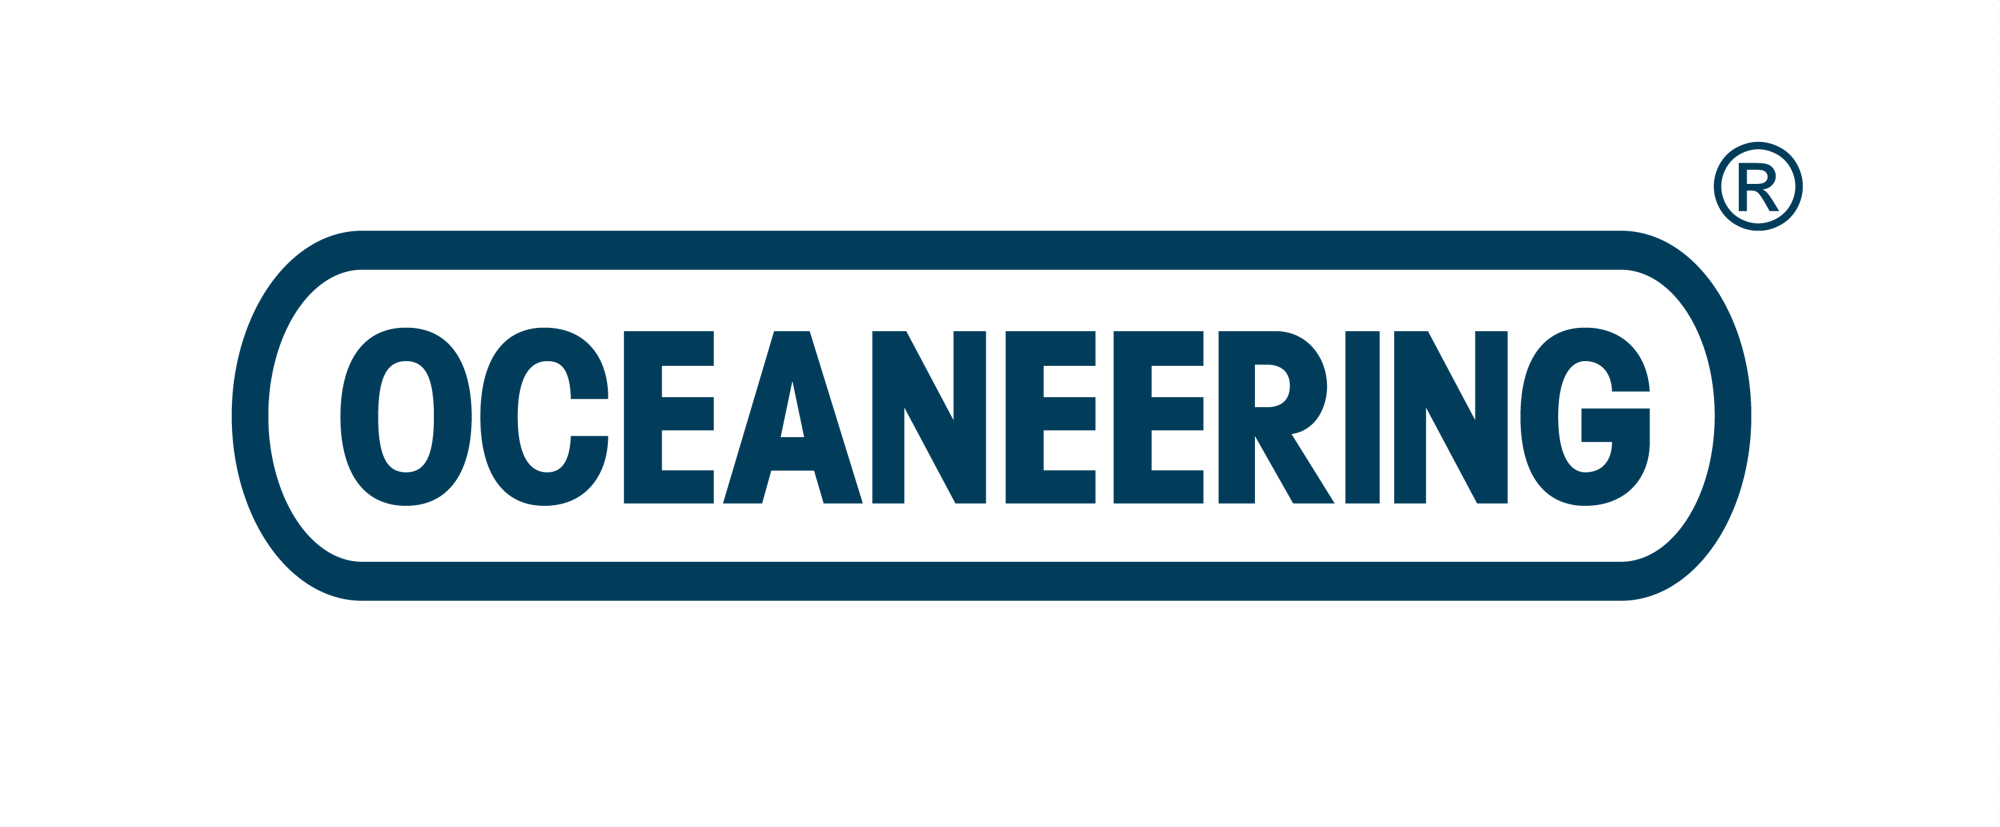 Oceaneering-Logo